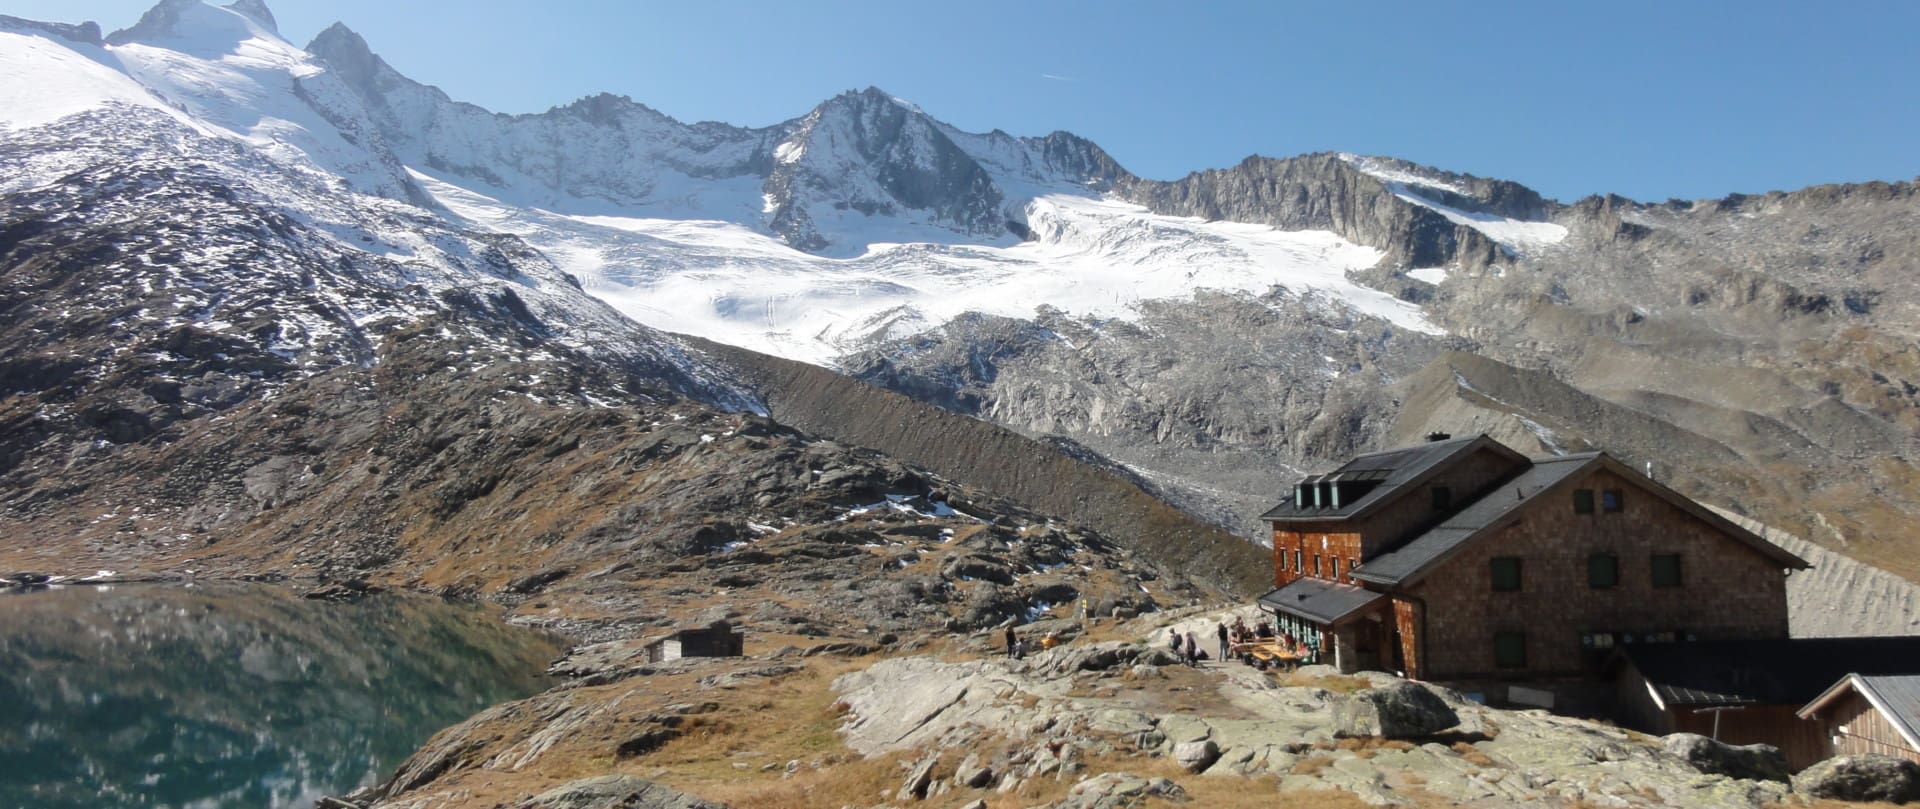 Zittauer Hütte vor einer bergigen Landschaft